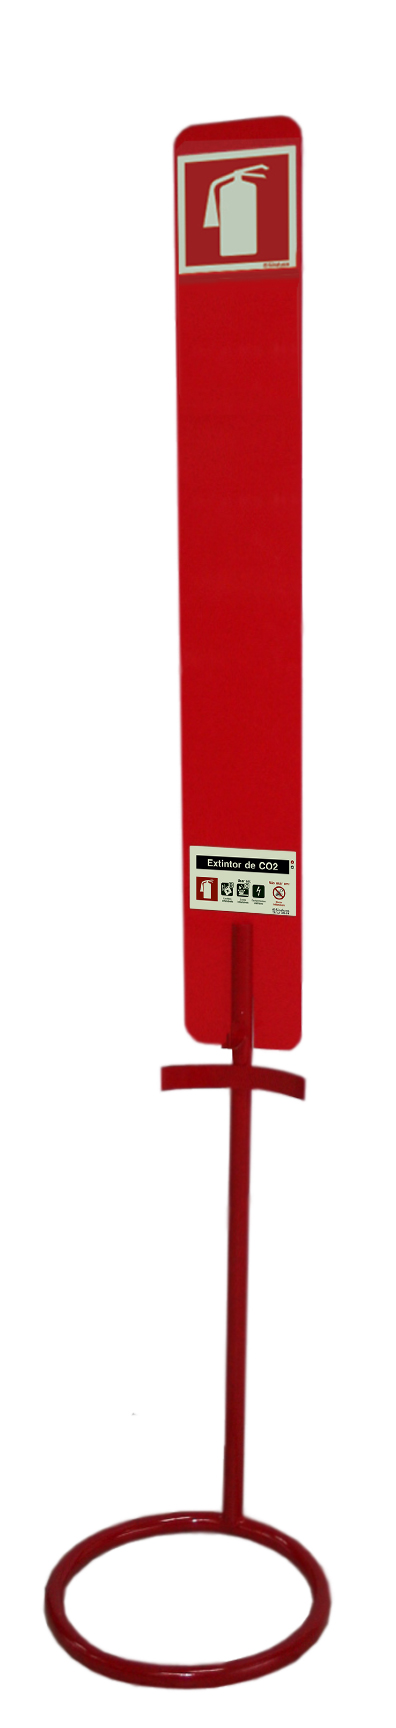 Posicionador vermelho para extintores de CO2